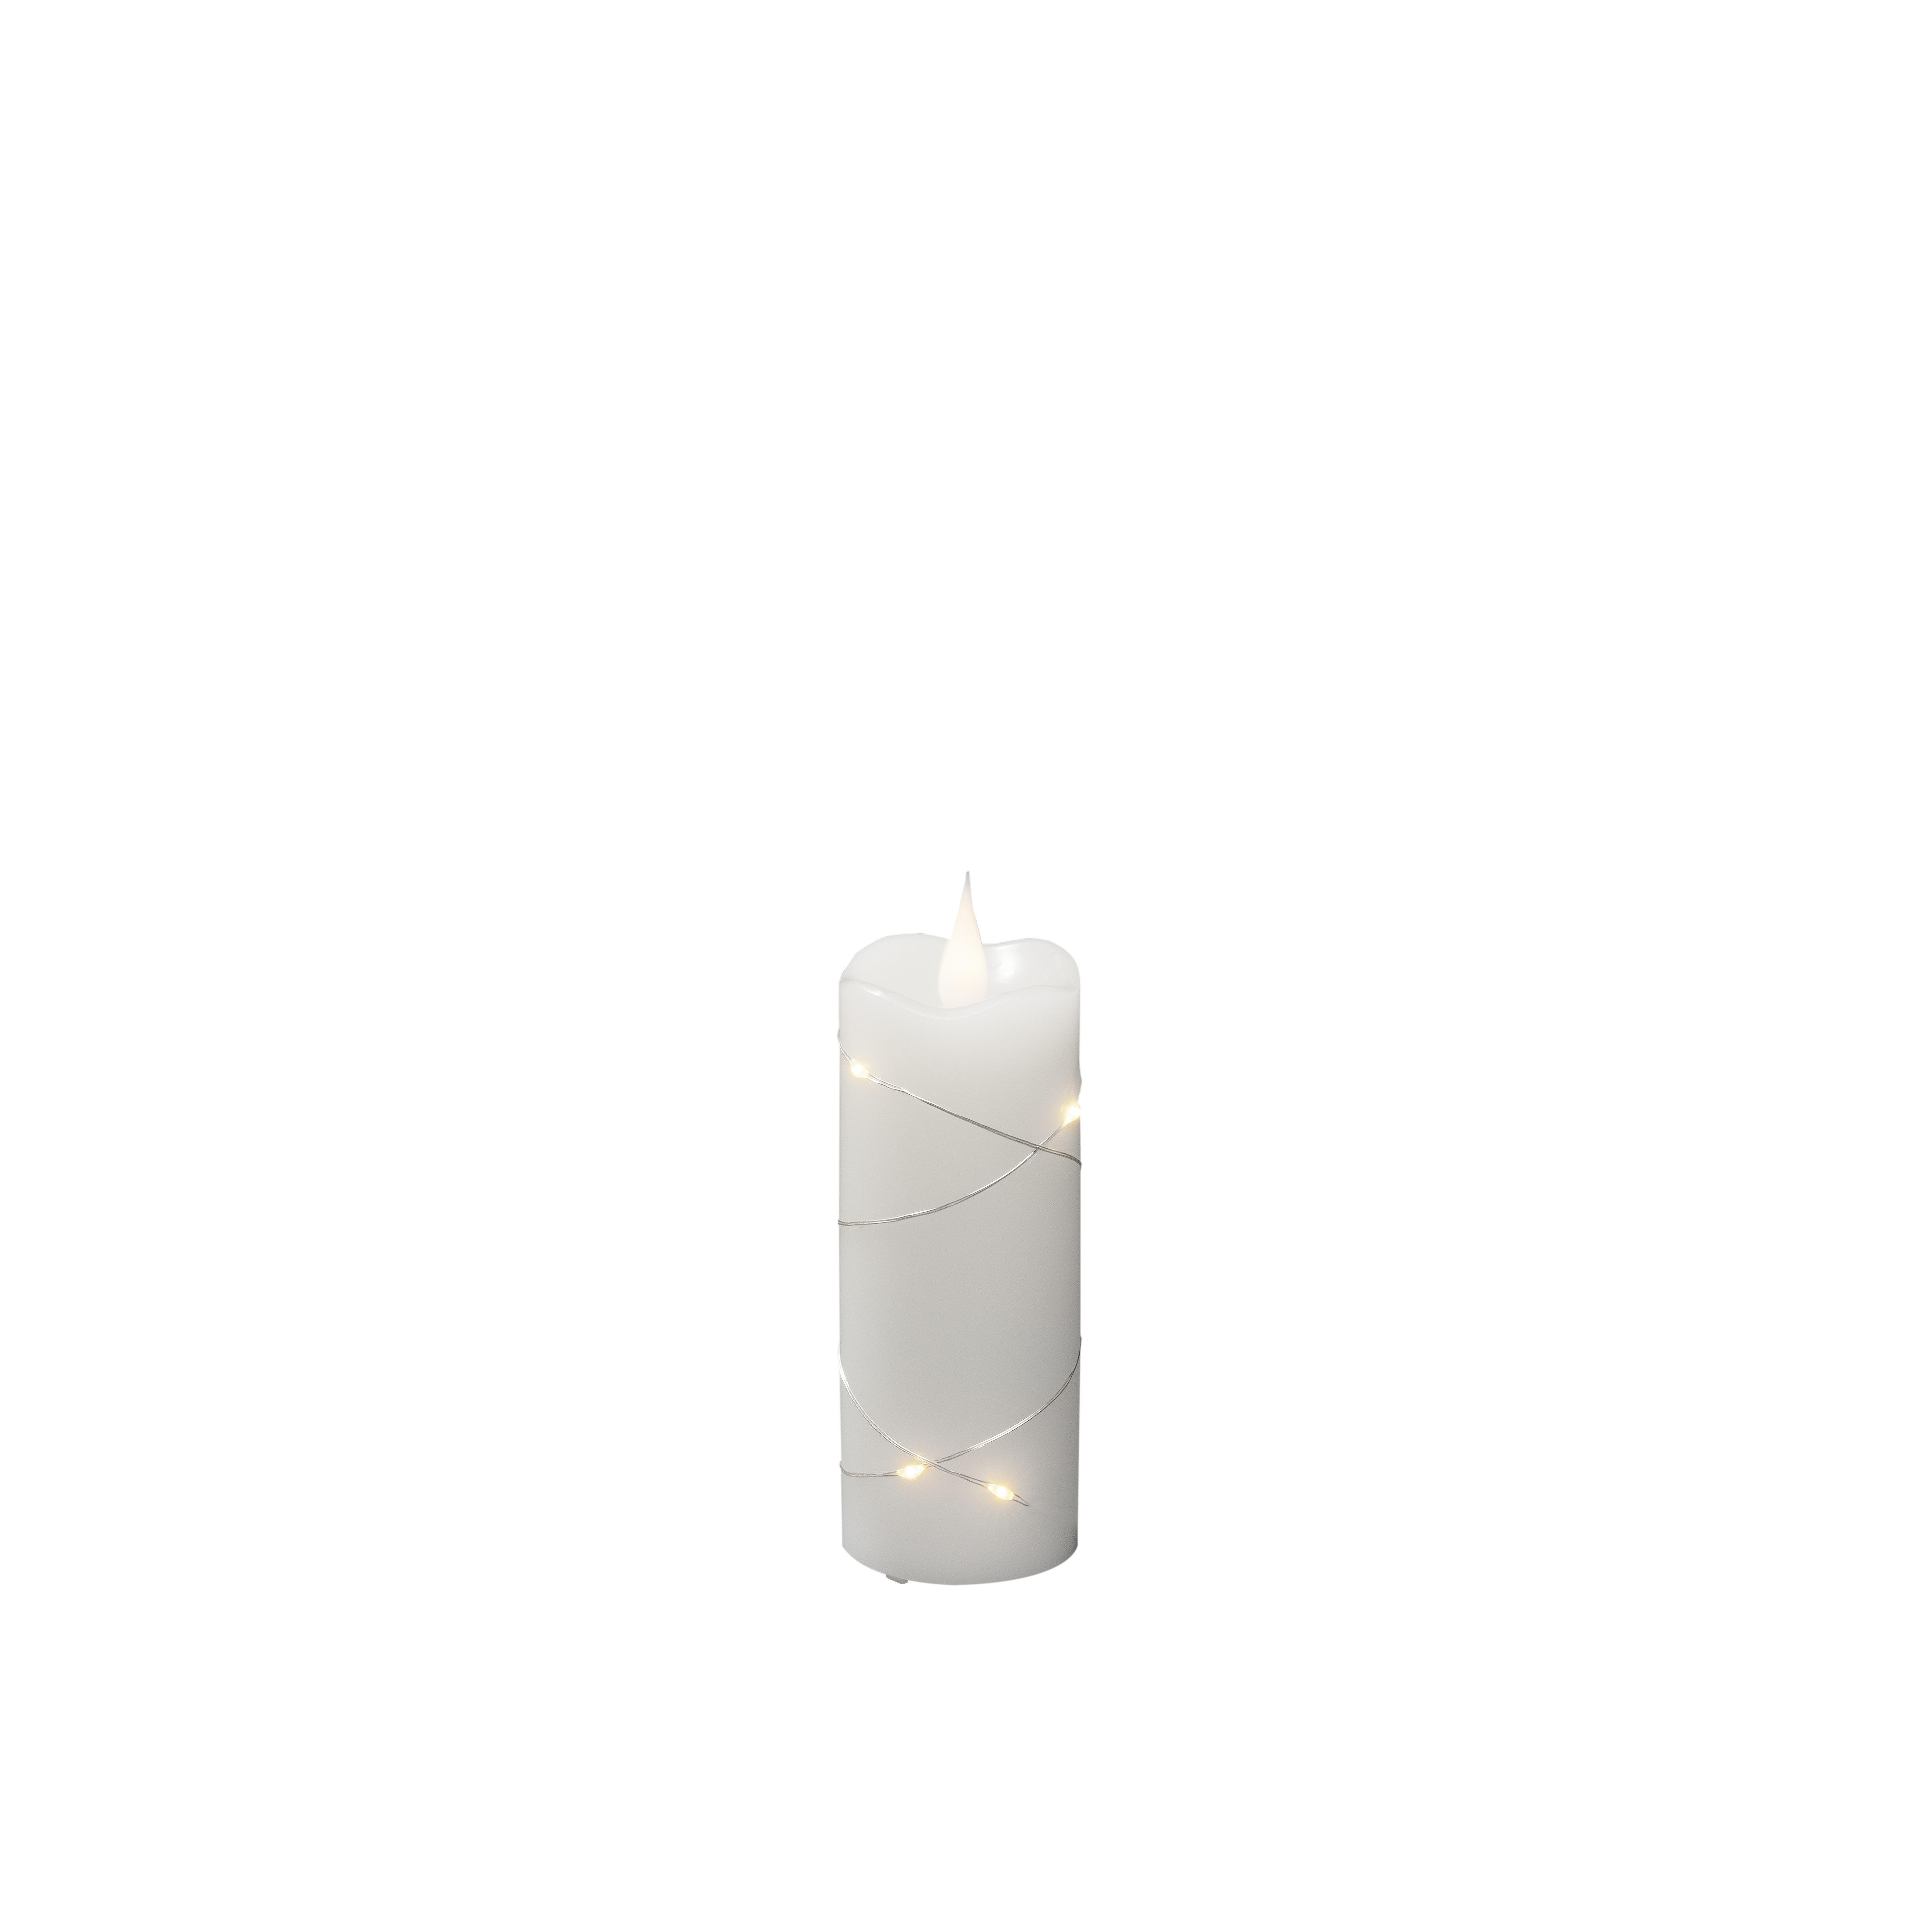 KONSTSMIDE 1824-190 LED ECHTWACHSKERZE WEISSTIMER Weihnachtsbeleuchtung, Weiß, Warmweiß